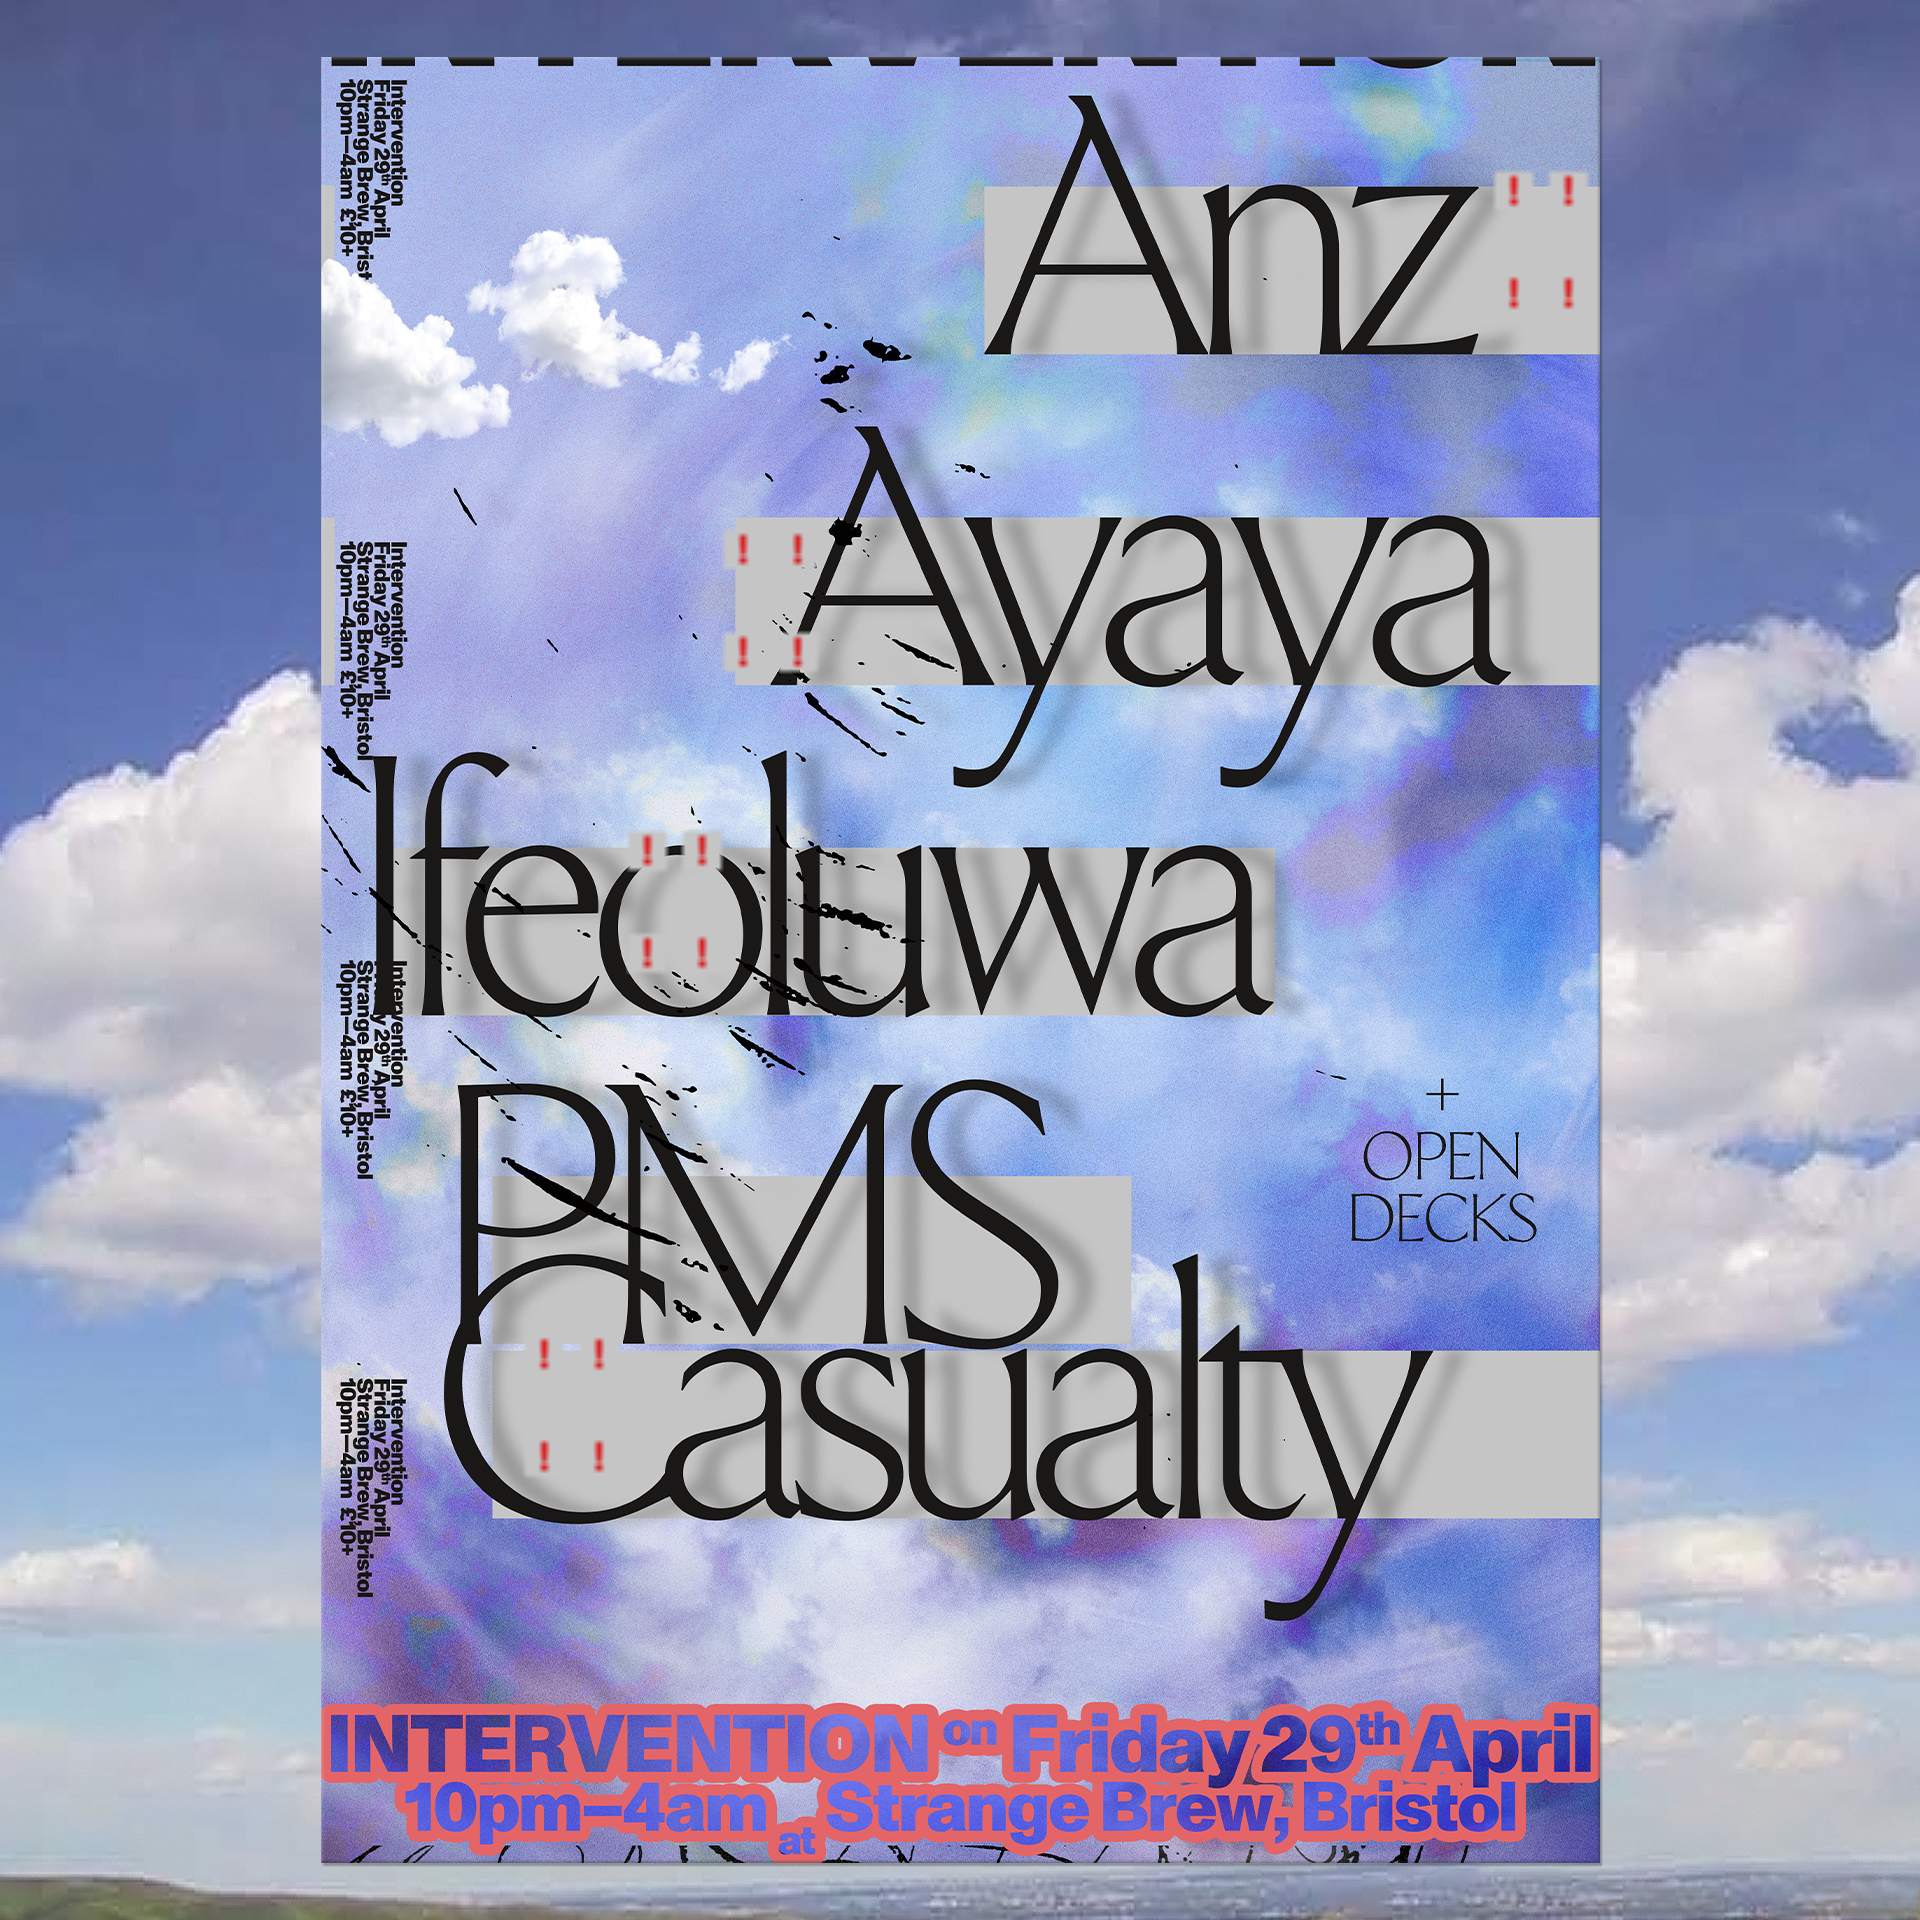 INTERVENTION W/ Anz, Ayaya, Ifeoluwa & PMS Casualty - Página trasera